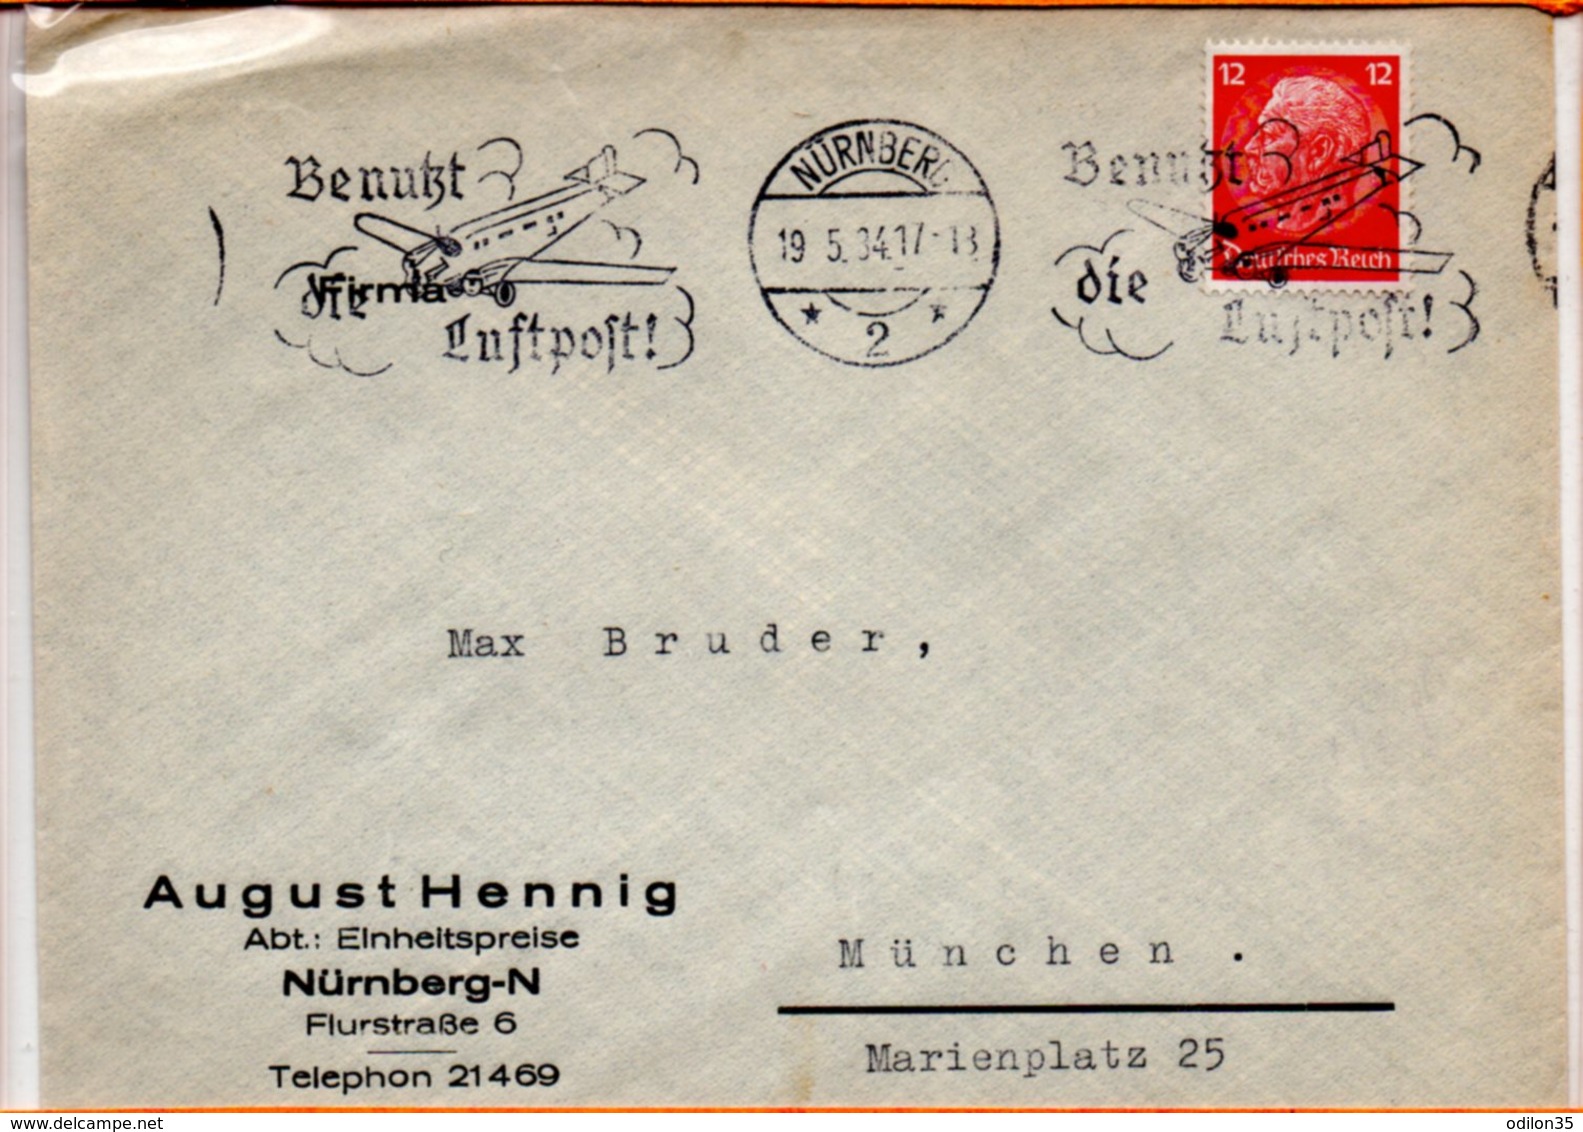 Allemagne, Flamme De Nurenberg, 1934, Benuzt Die Luftpost - Lettres & Documents